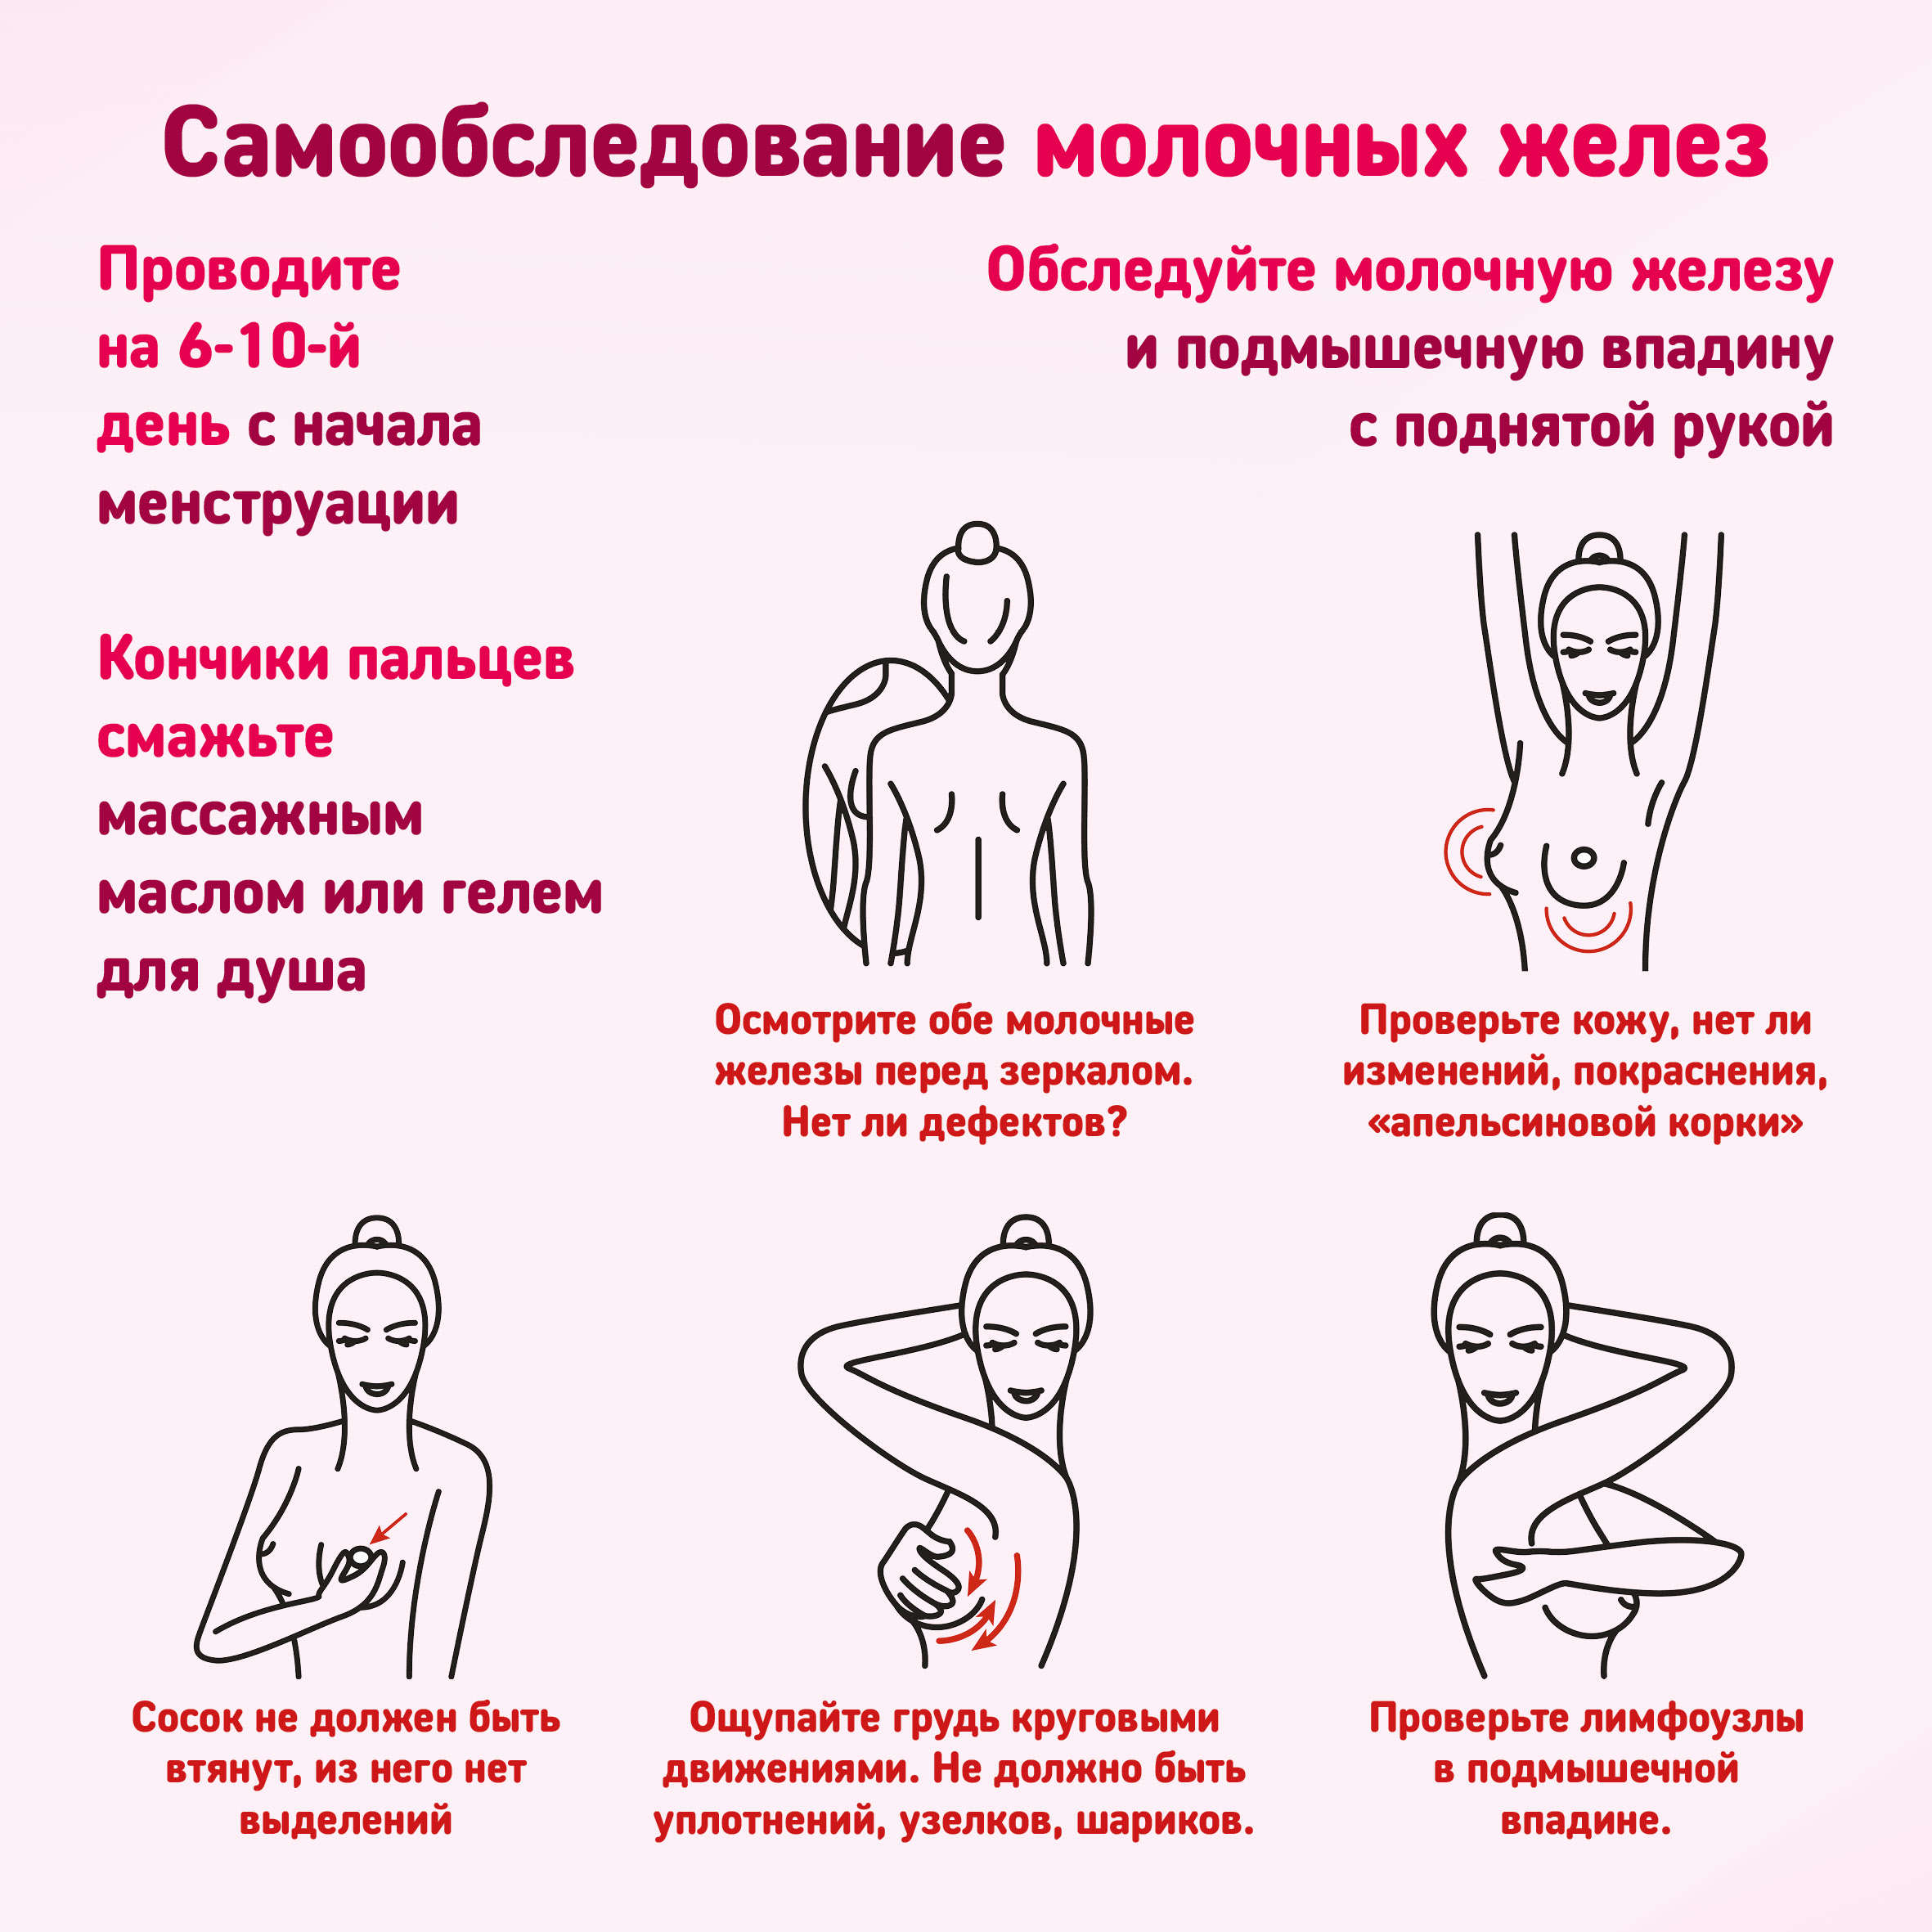 упражнения на грудь при беременности фото 89